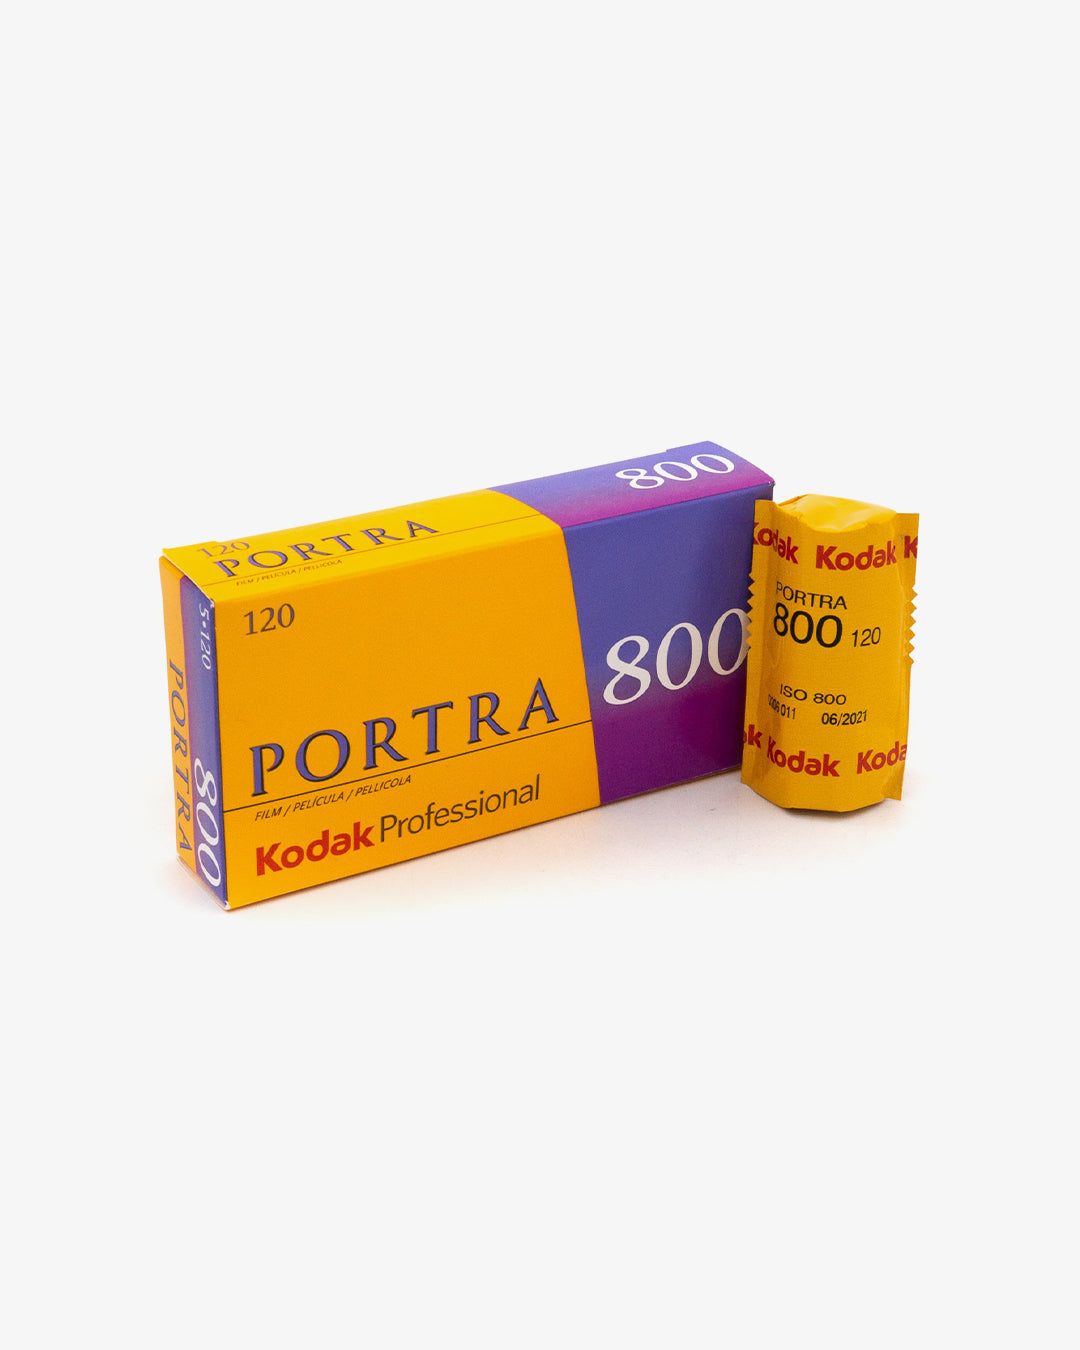 今月限定／特別大特価 Kodak PORTRA400 135 x4箱 rahathomedesign.com